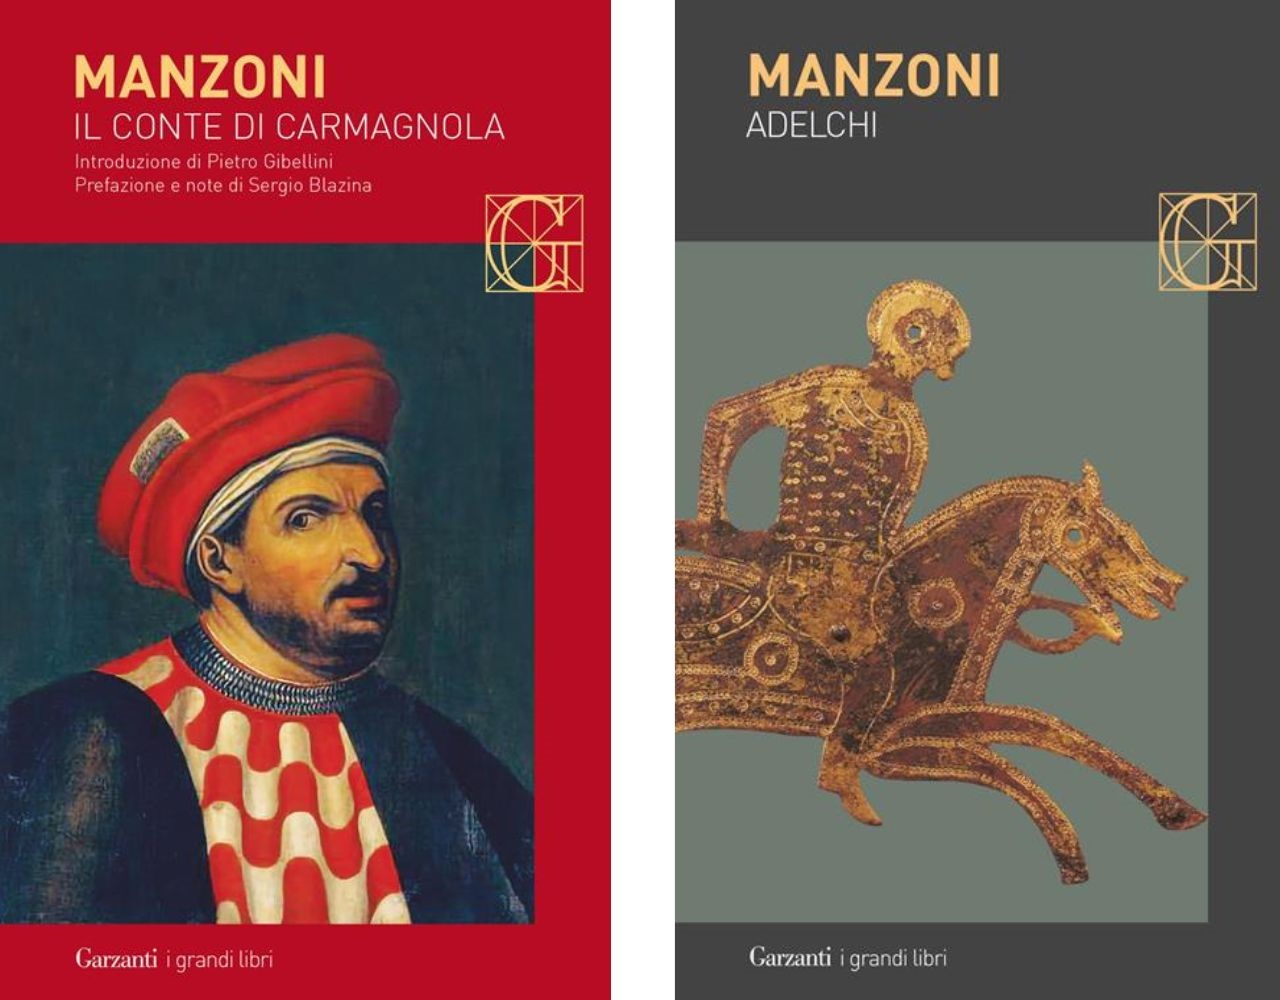 Copertina del libro Il conte di Carmagnola e del libro Adelchi di Alessandro Manzoni